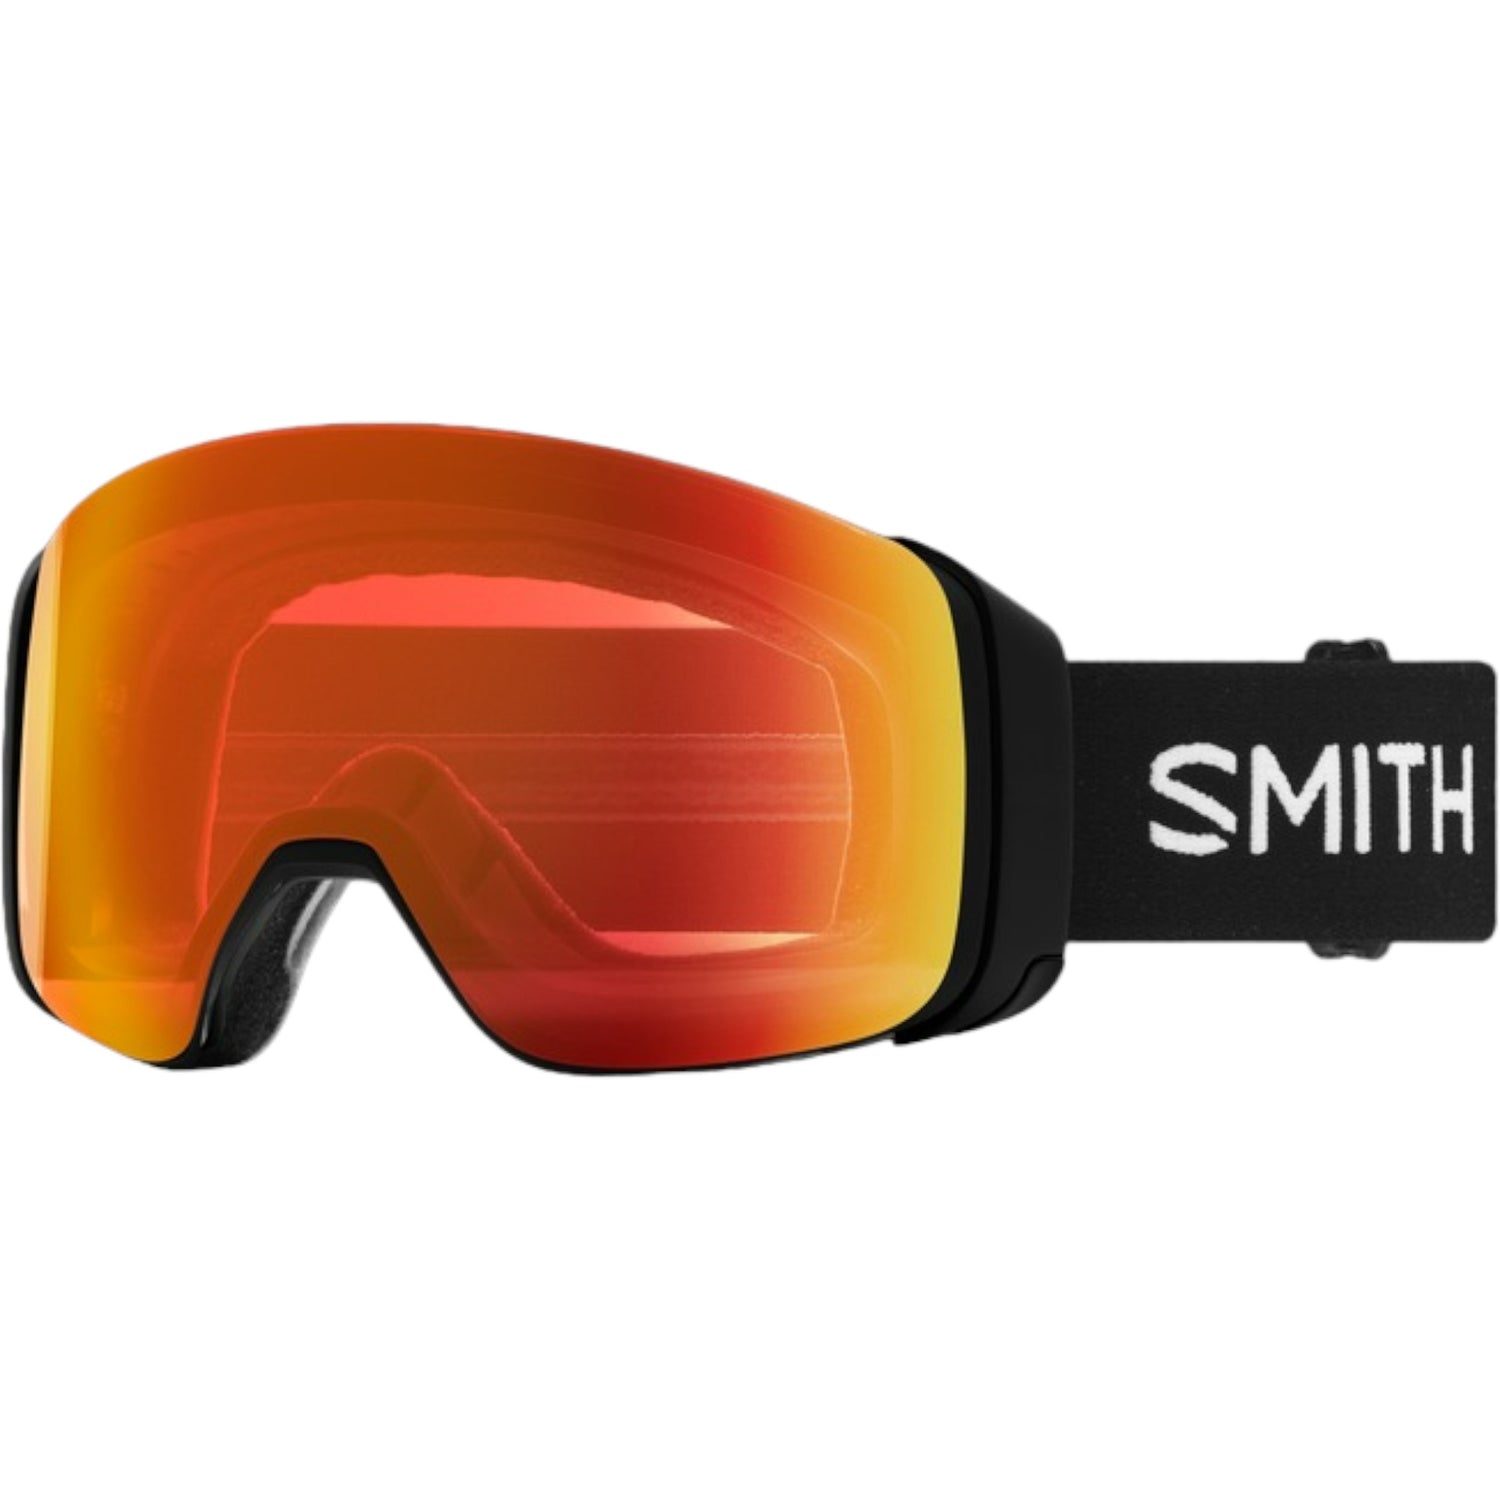 4D MAG Adult Ski Goggles